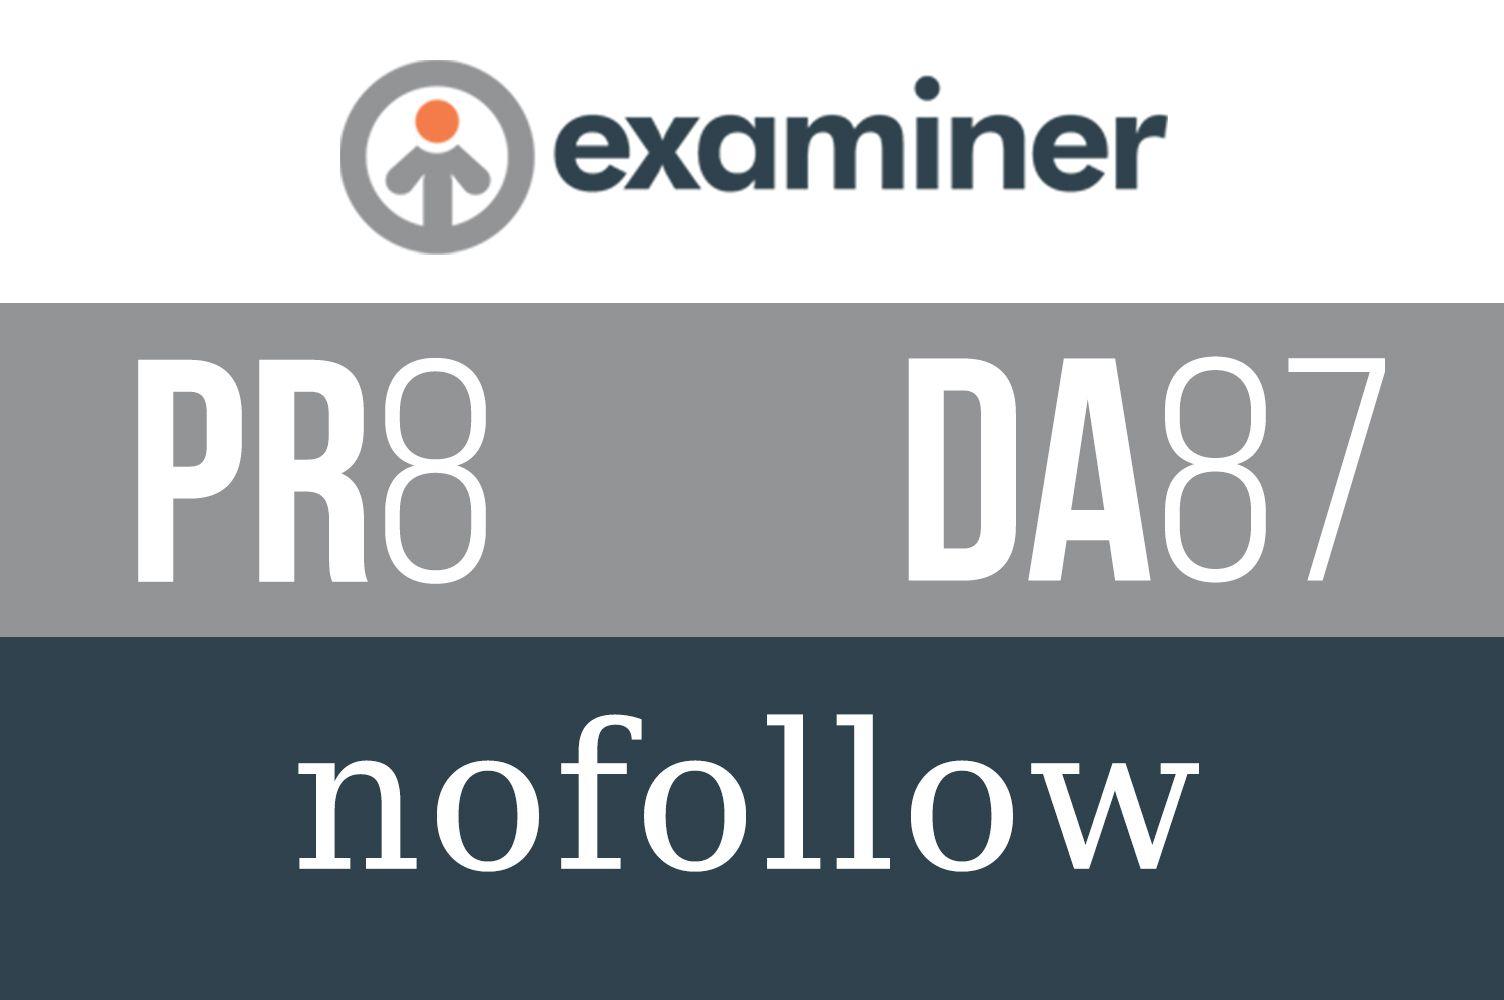 Examiner.com Logo - Guest Post on Examiner. com, a PR8 and DA87 Website for $49